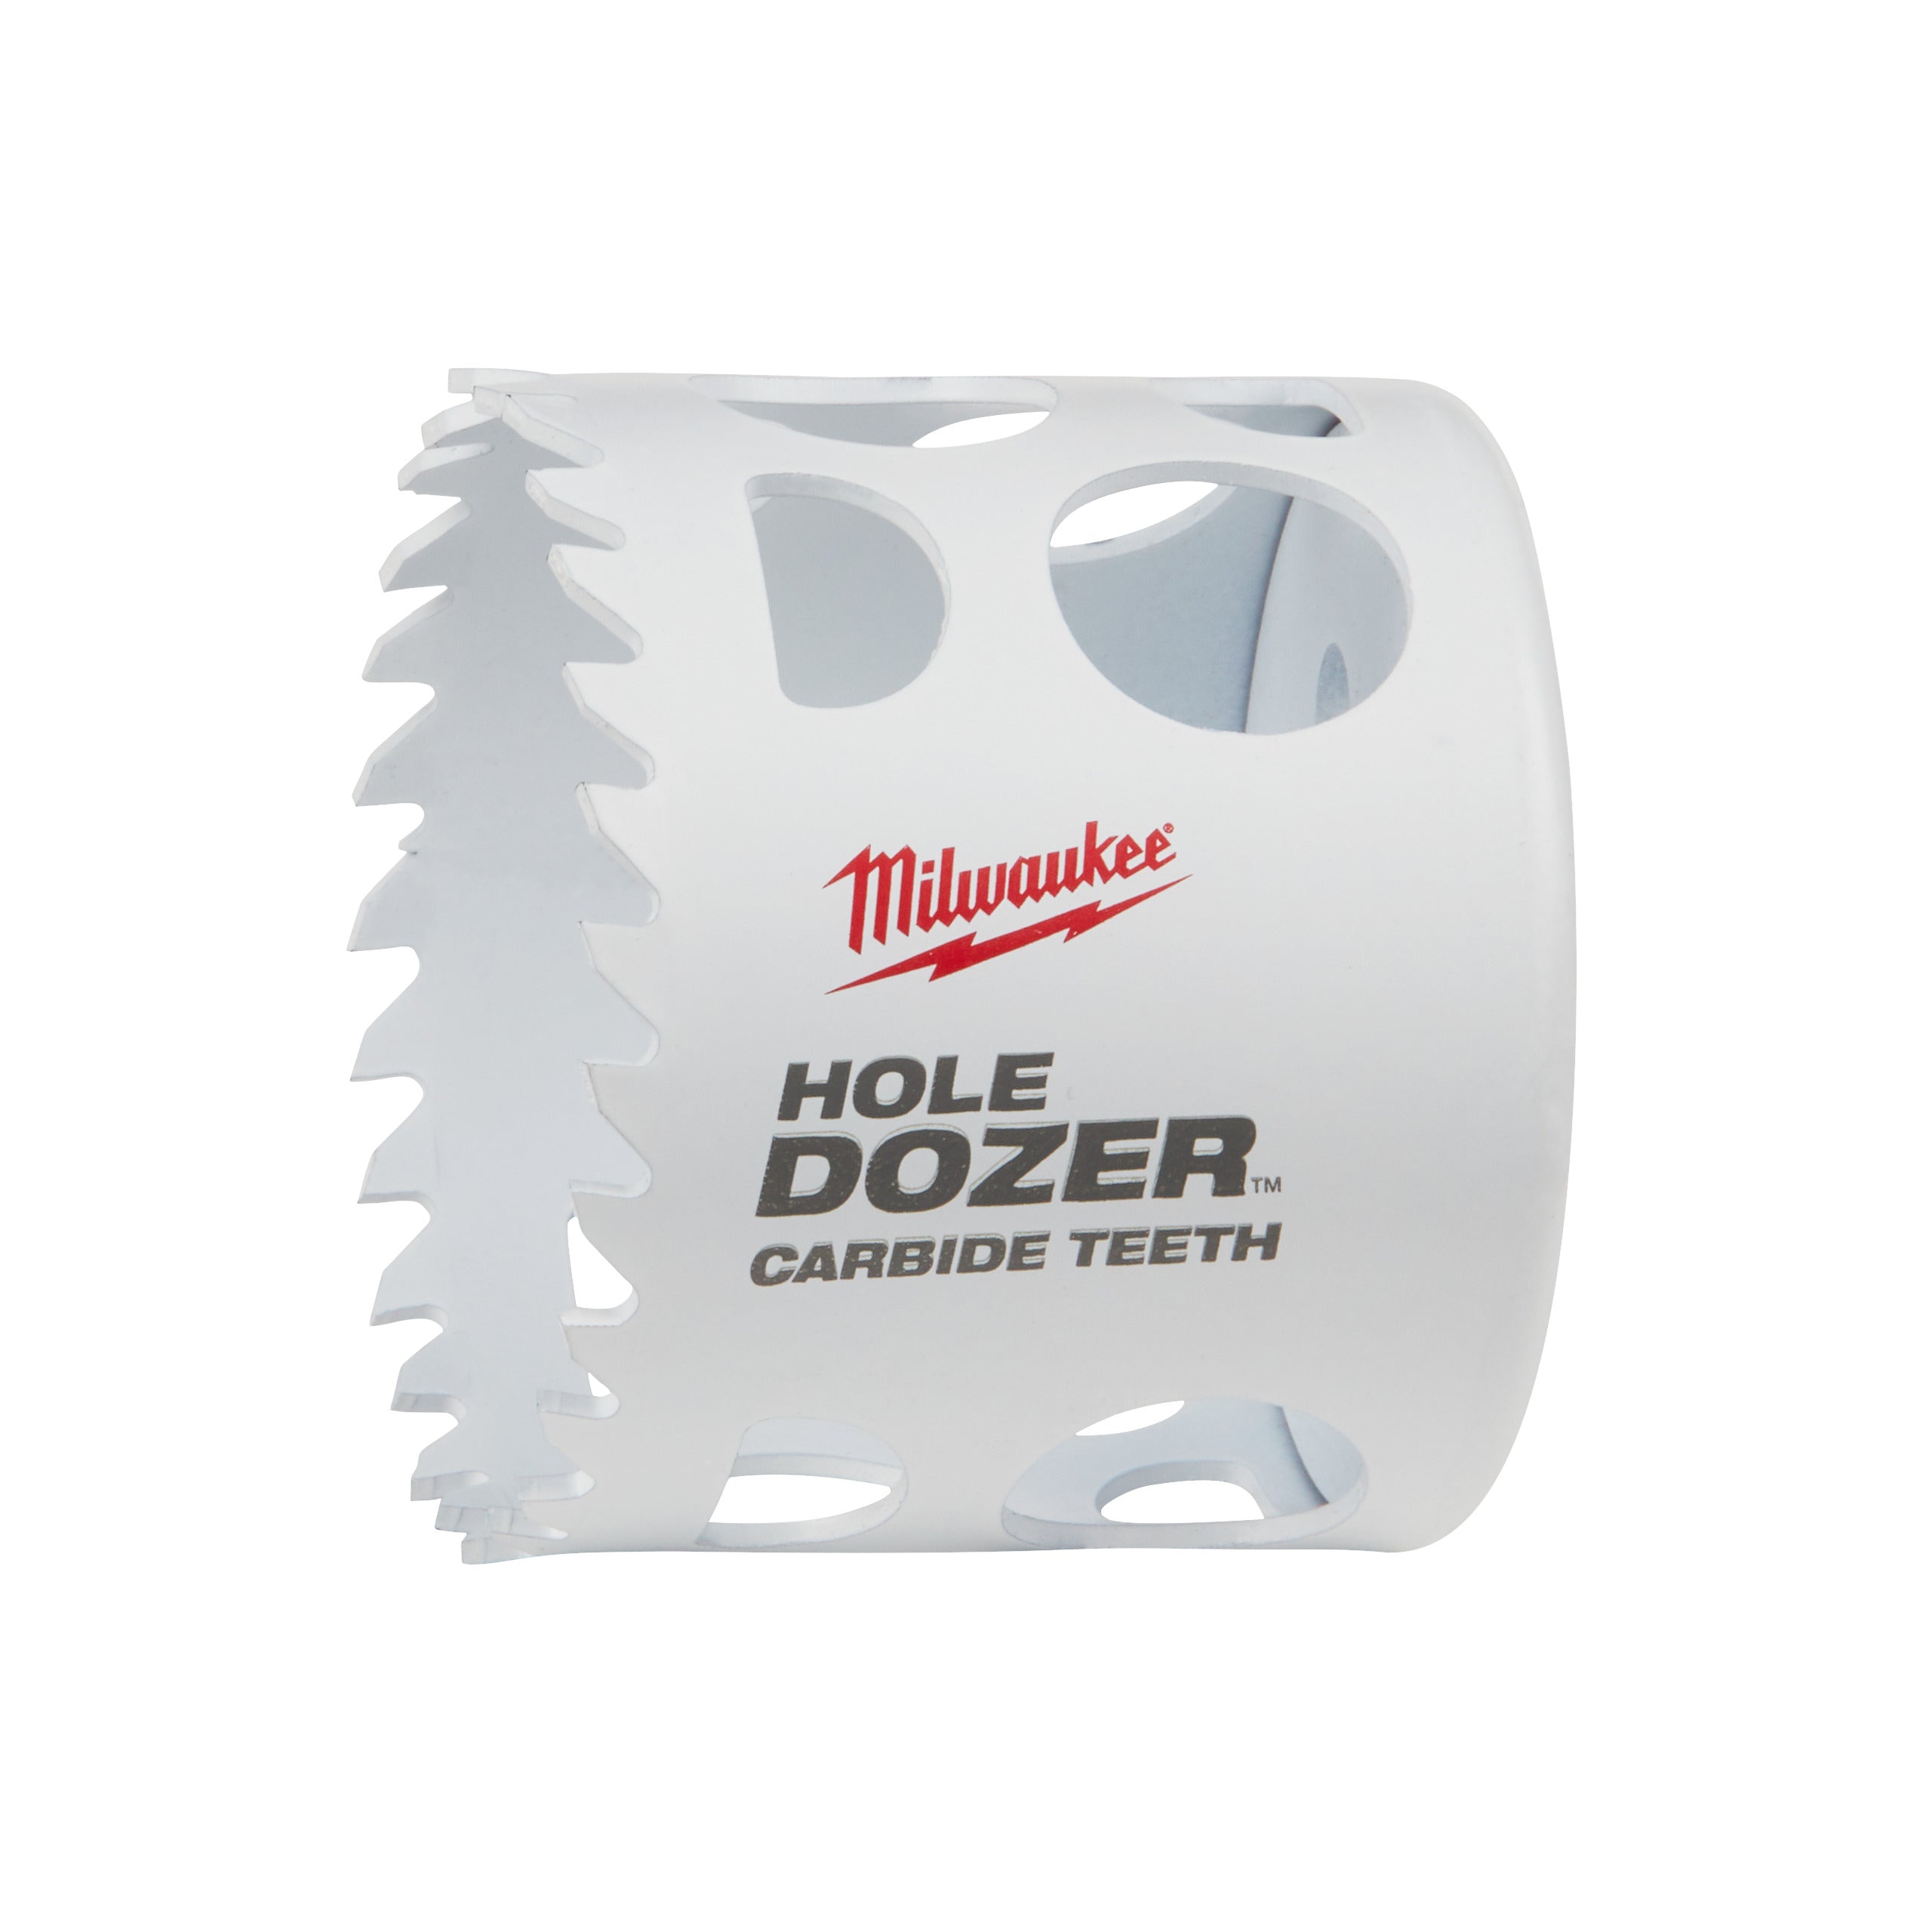 Carotă Milwaukee HOLE DOZER™ bi-metal cu dinți din carbură Ø57 mm 49560724